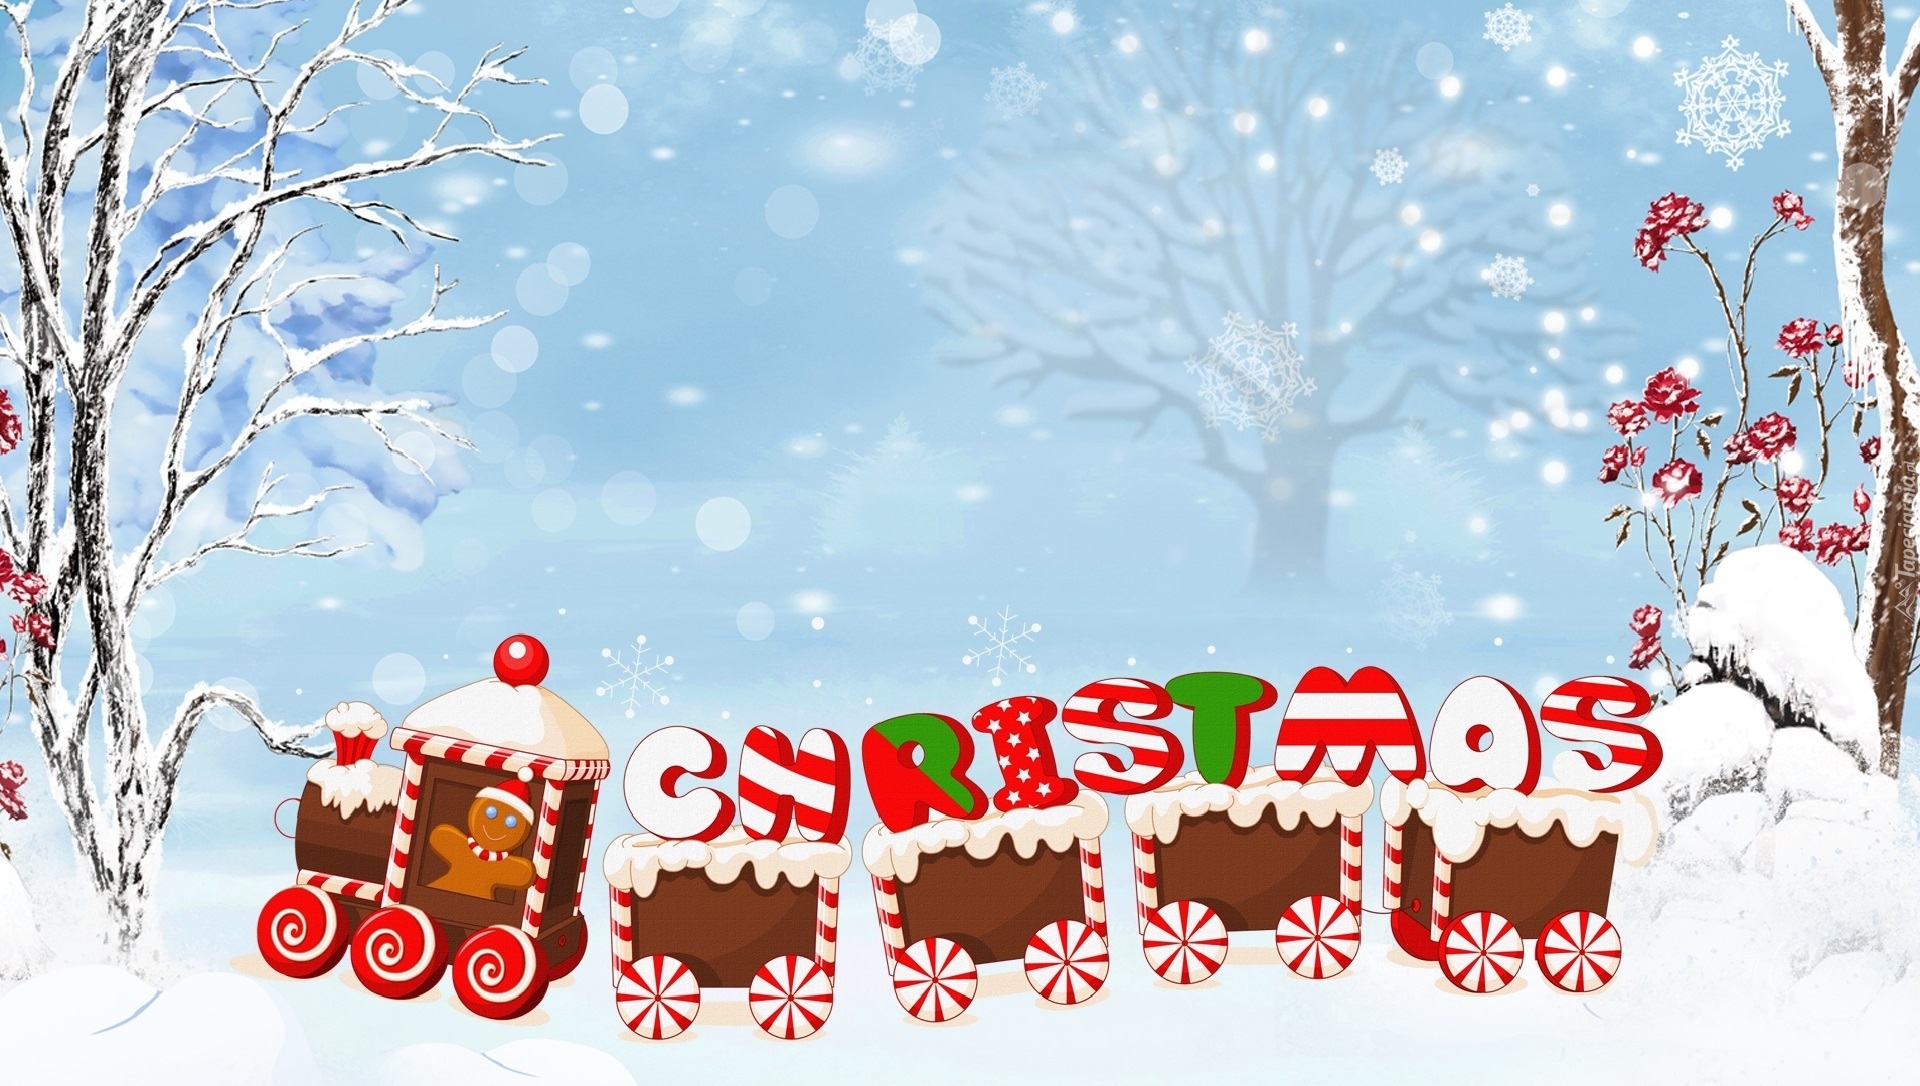 Boże Narodzenie, Zima, Śnieg, Świąteczny, Pociąg, Napis, Christmas, 2D